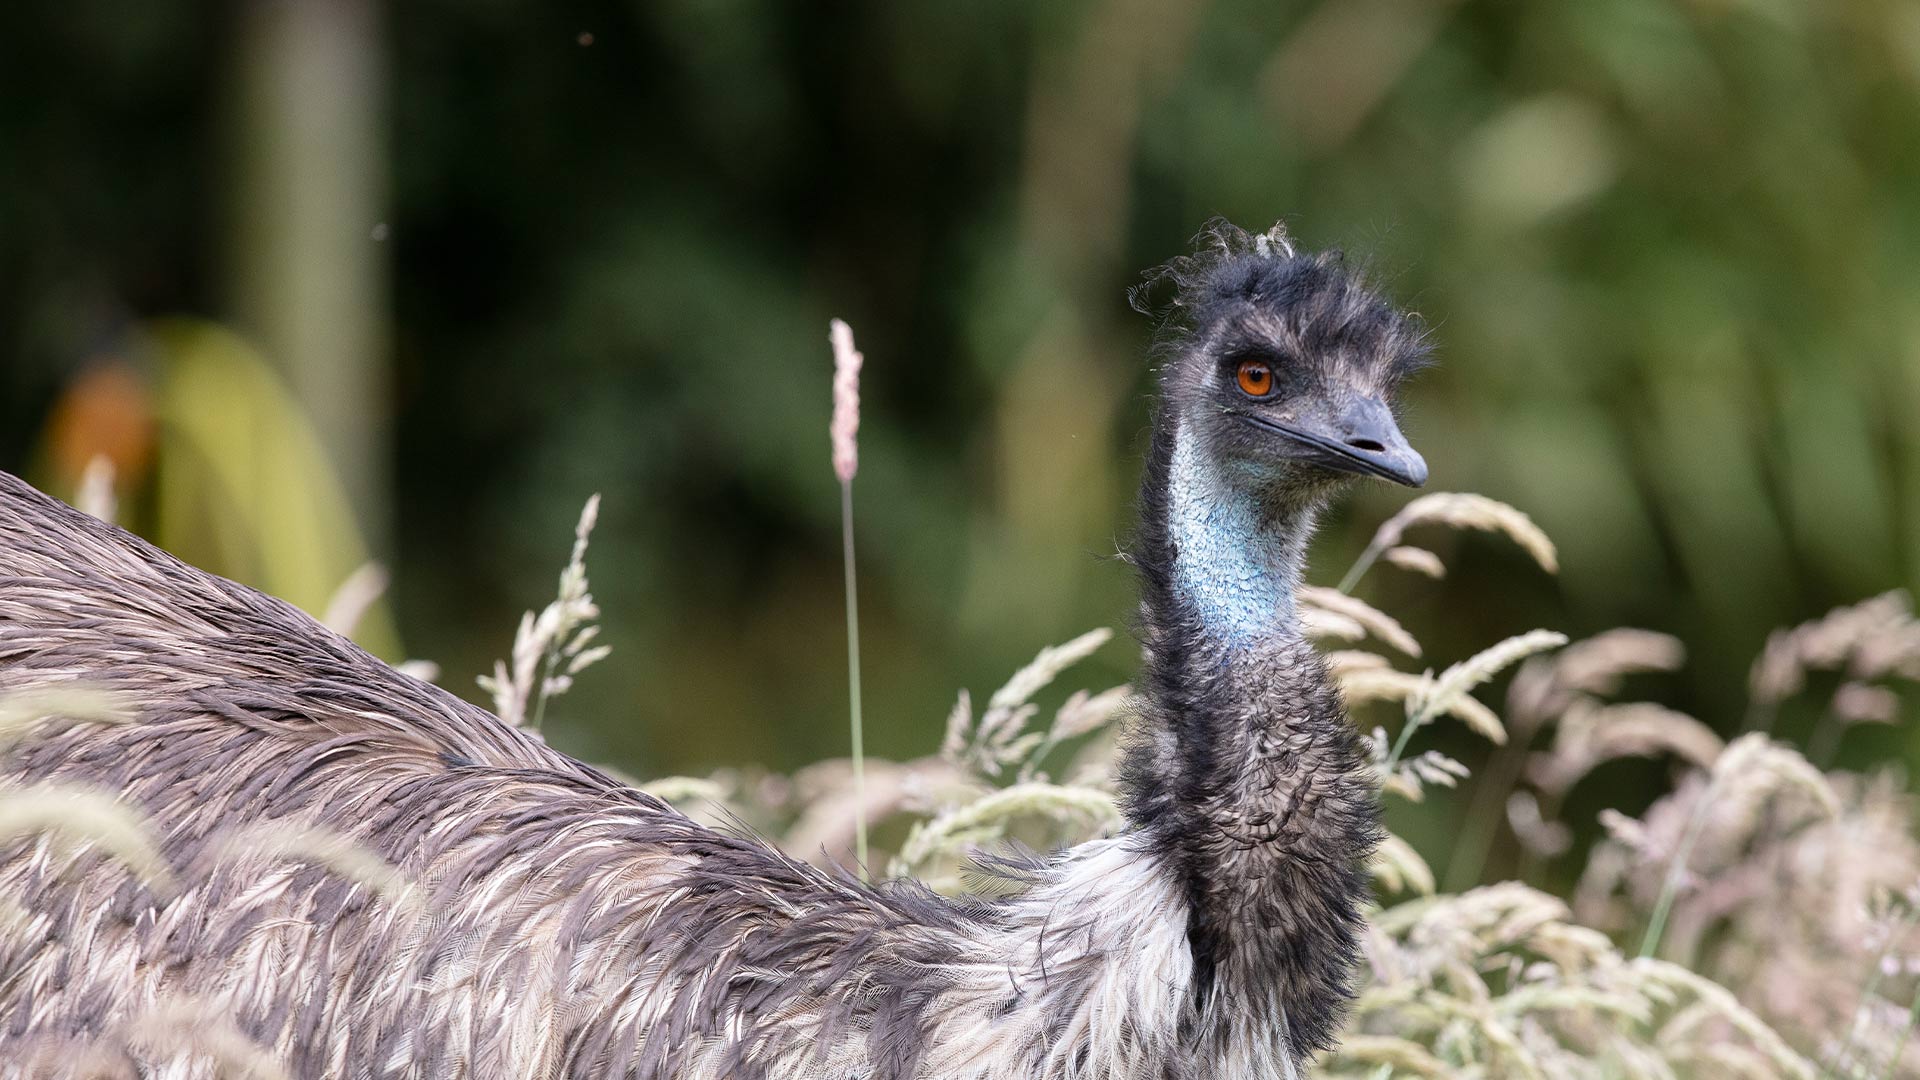 An emu wondering in long grass